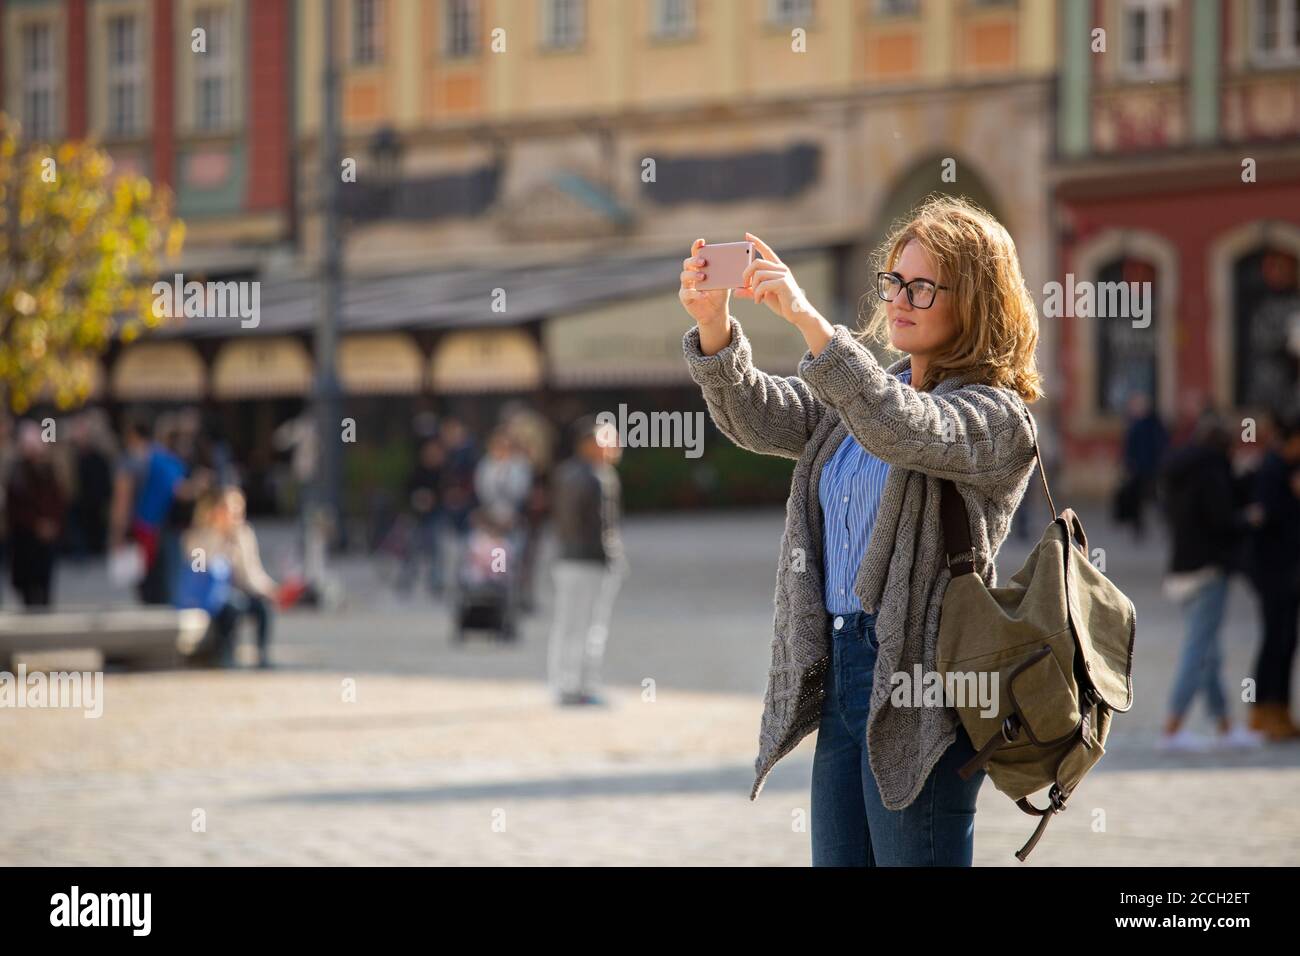 Frau Reisende fotografieren Wahrzeichen auf Smartphone-Kamera Stockfoto